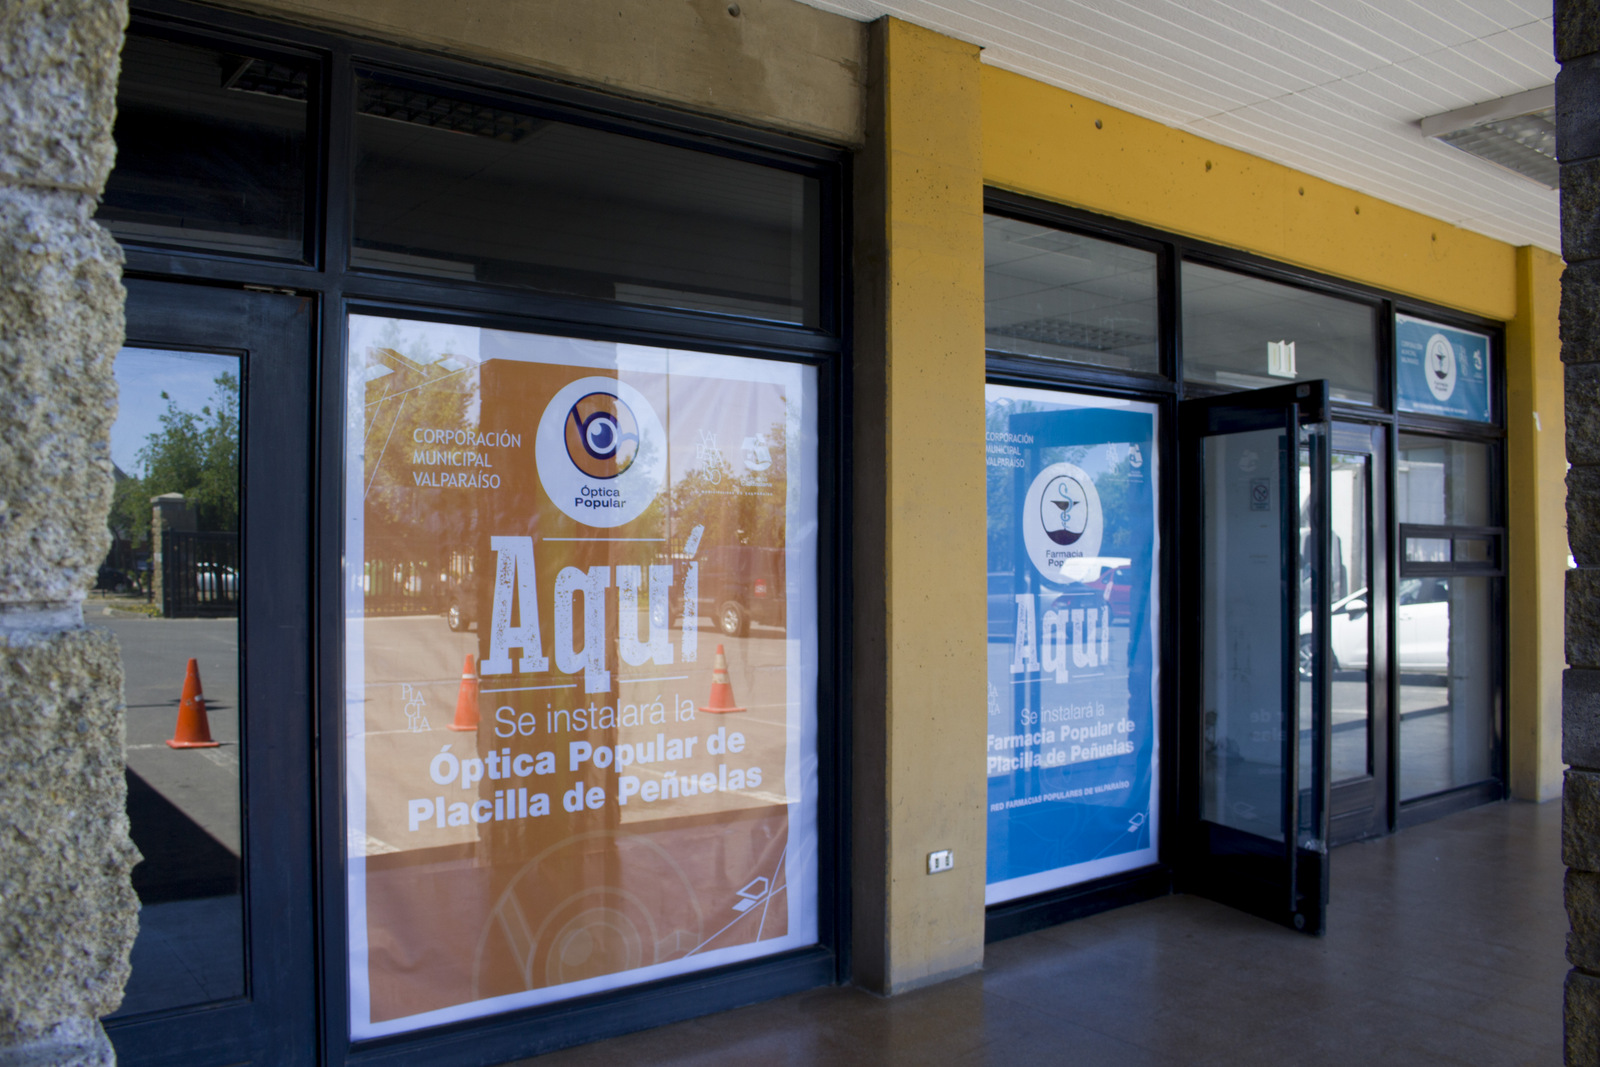 Farmacia y Óptica Popular cuentan con locales de atención en Placilla de Peñuelas